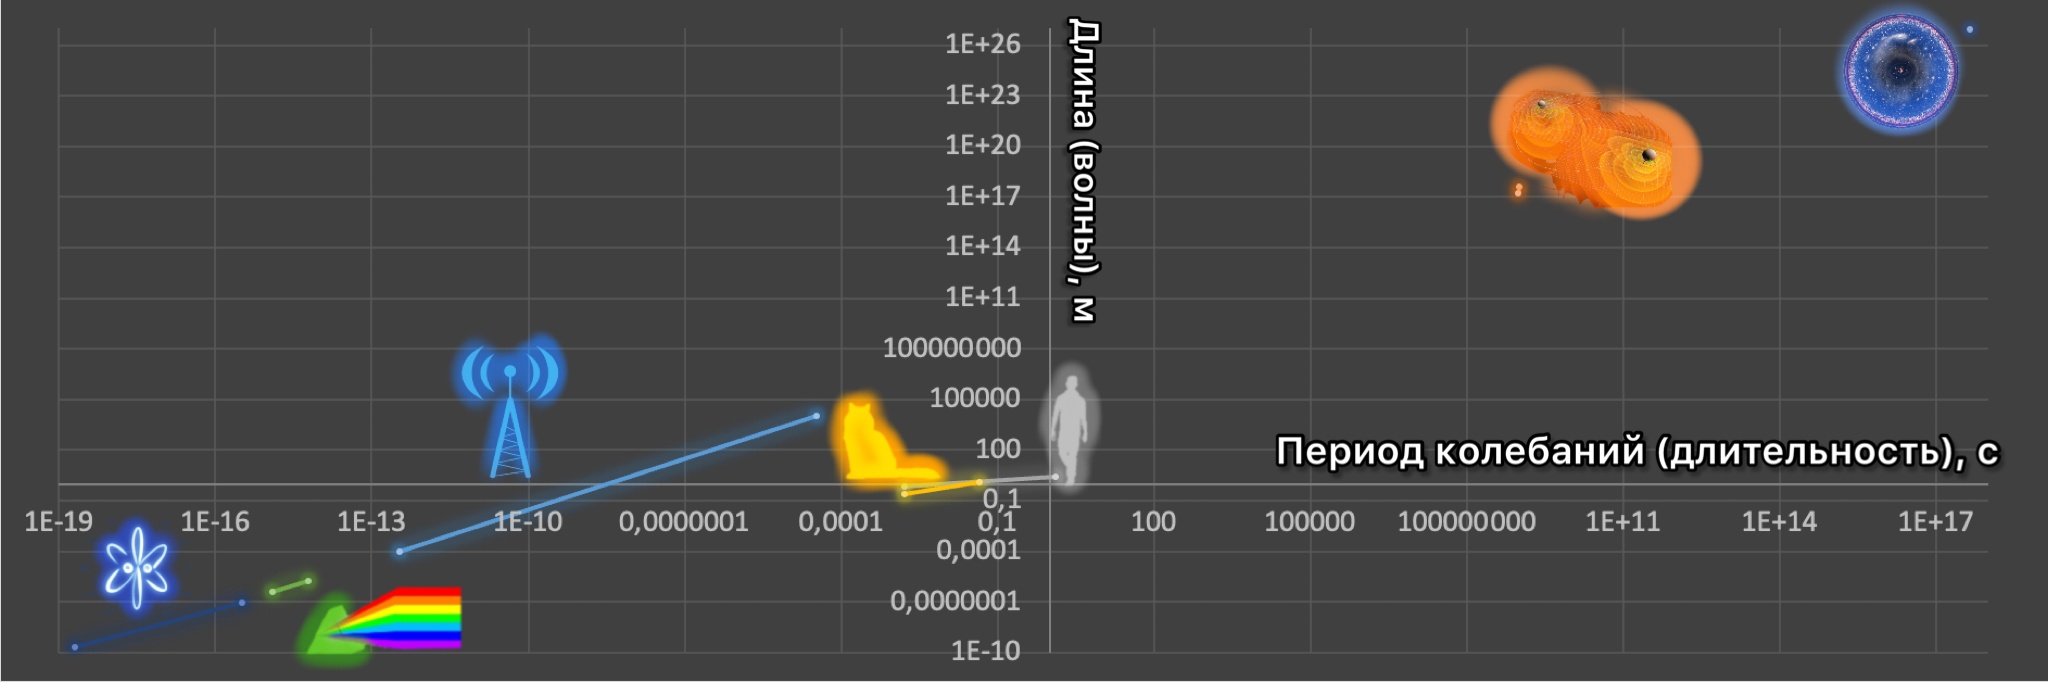 Слева направо: синий: атосекундная физика, 24 аттосекудны - атомная единица времени, 43 аттосекунды - самый короткий импульс полученный физиками, 0,2 нанометра - размер атома водорода; зеленый: видимый свет с длиной волны от 380 до 750 нанометров; голубой: радиоволны с длиной волны от 0,1 миллиметра до 10 километров; желтый: размеры и период колебаний звуков кота (самый высокий звук кота и человека совпадают, потому что домашние кошки научились имитировать крики младенцев); серый: размеры и период колебаний голоса человека (самый маленький человек меньше самого большого кота); оранжевый: гравитационные волны наногерцовой частоты, на этих частотах был зафиксирован гравитационный гул Вселенной; снова синий: размеры и возраст видимой Вселенной, радиус в световых годах более чем втрое больше возраста в годах, что не случайно (готовим об этом материал)